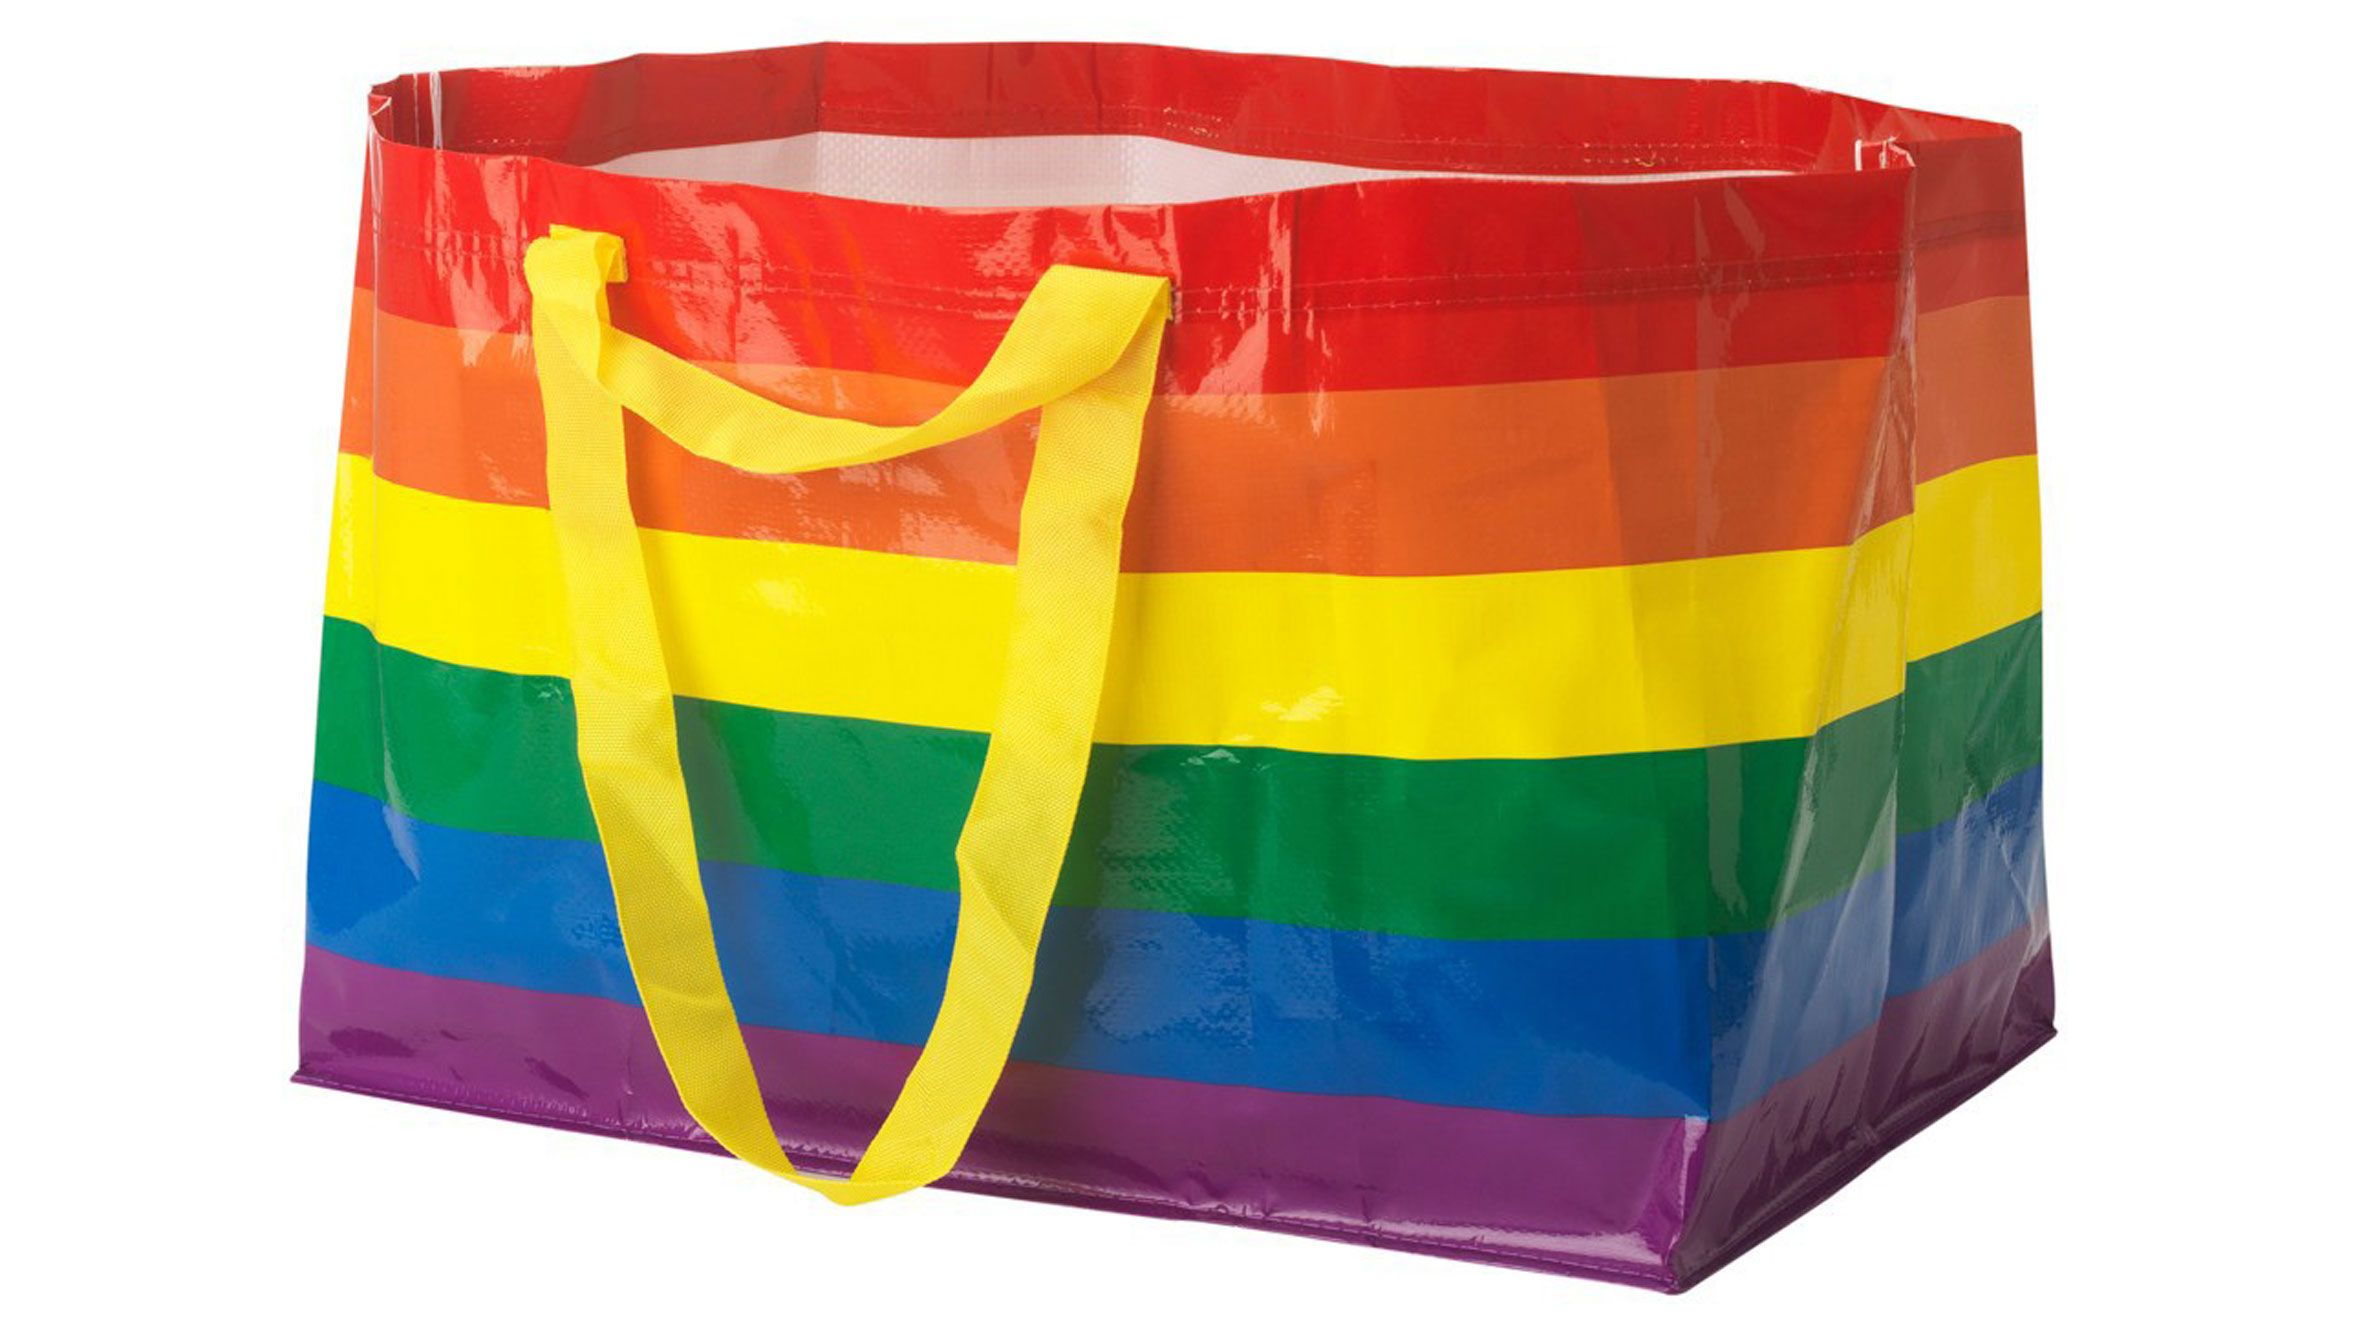 Η εμβληματική τσάντα της IKEA σε νέα εκδοχή | Ι LOVE STYLE